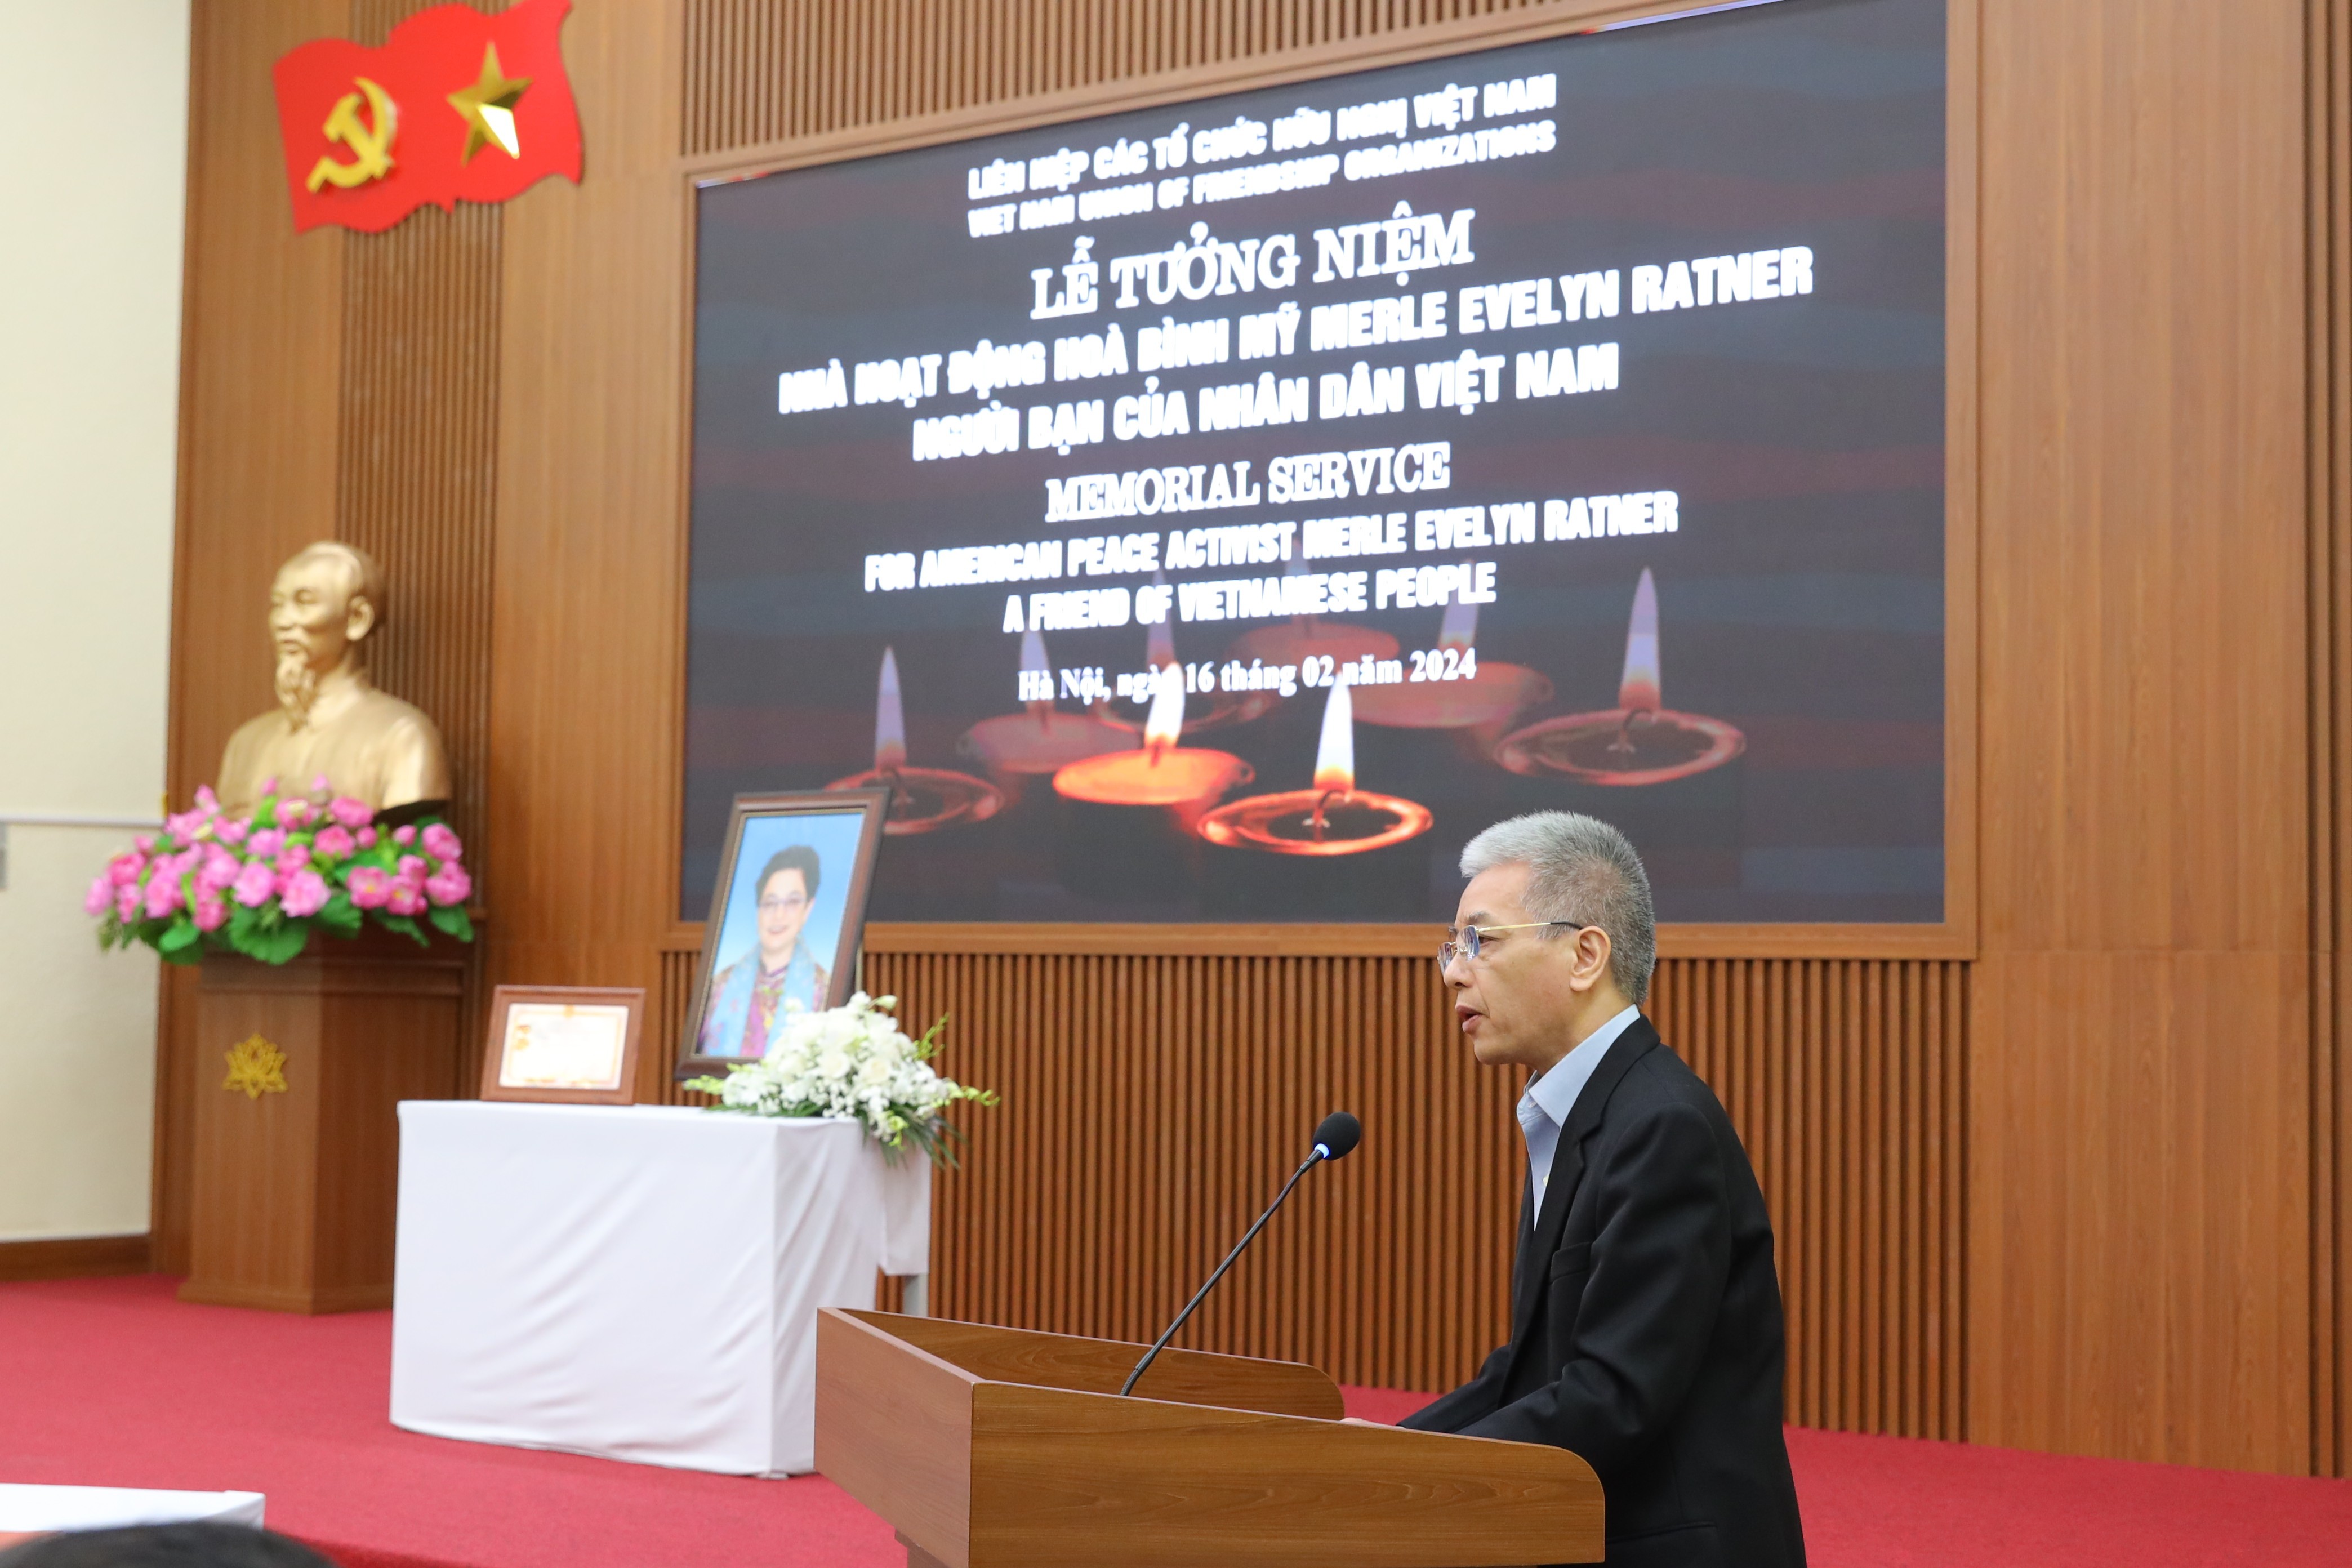 Ông Bùi Thế Giang, Phó Chủ tịch Hội Việt - Mỹ phát biểu tại lễ tưởng niệm bà Merle Ratner. (Ảnh: Đinh Hòa)